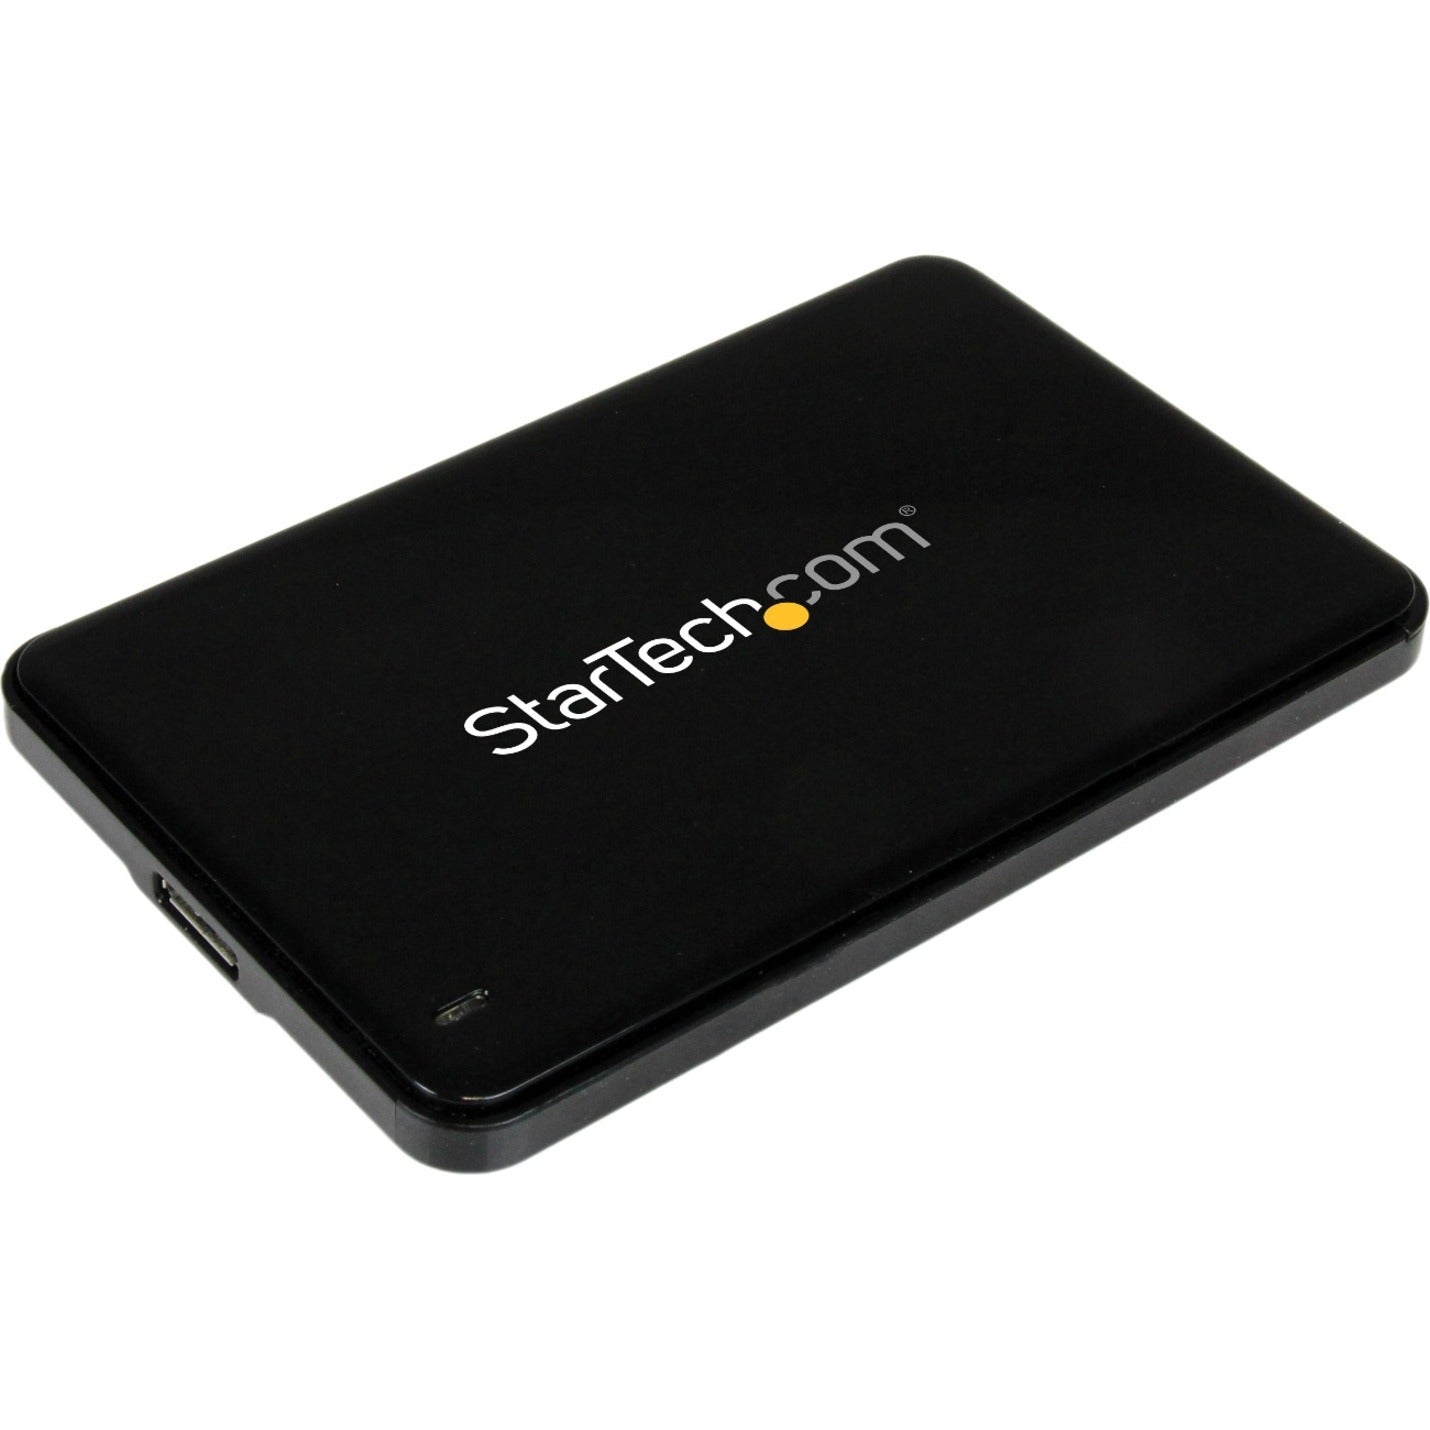 سريع بيانات شحن شركة StarTech.com ثلاثي الأبعاد صلب واجهة USB 3.0 الحالة الصلبة نقل نحيف ثلاثة وعشرون ثانية HDD SSD ساتا S2510BPU337 SATA 7mm تشفيرroker.